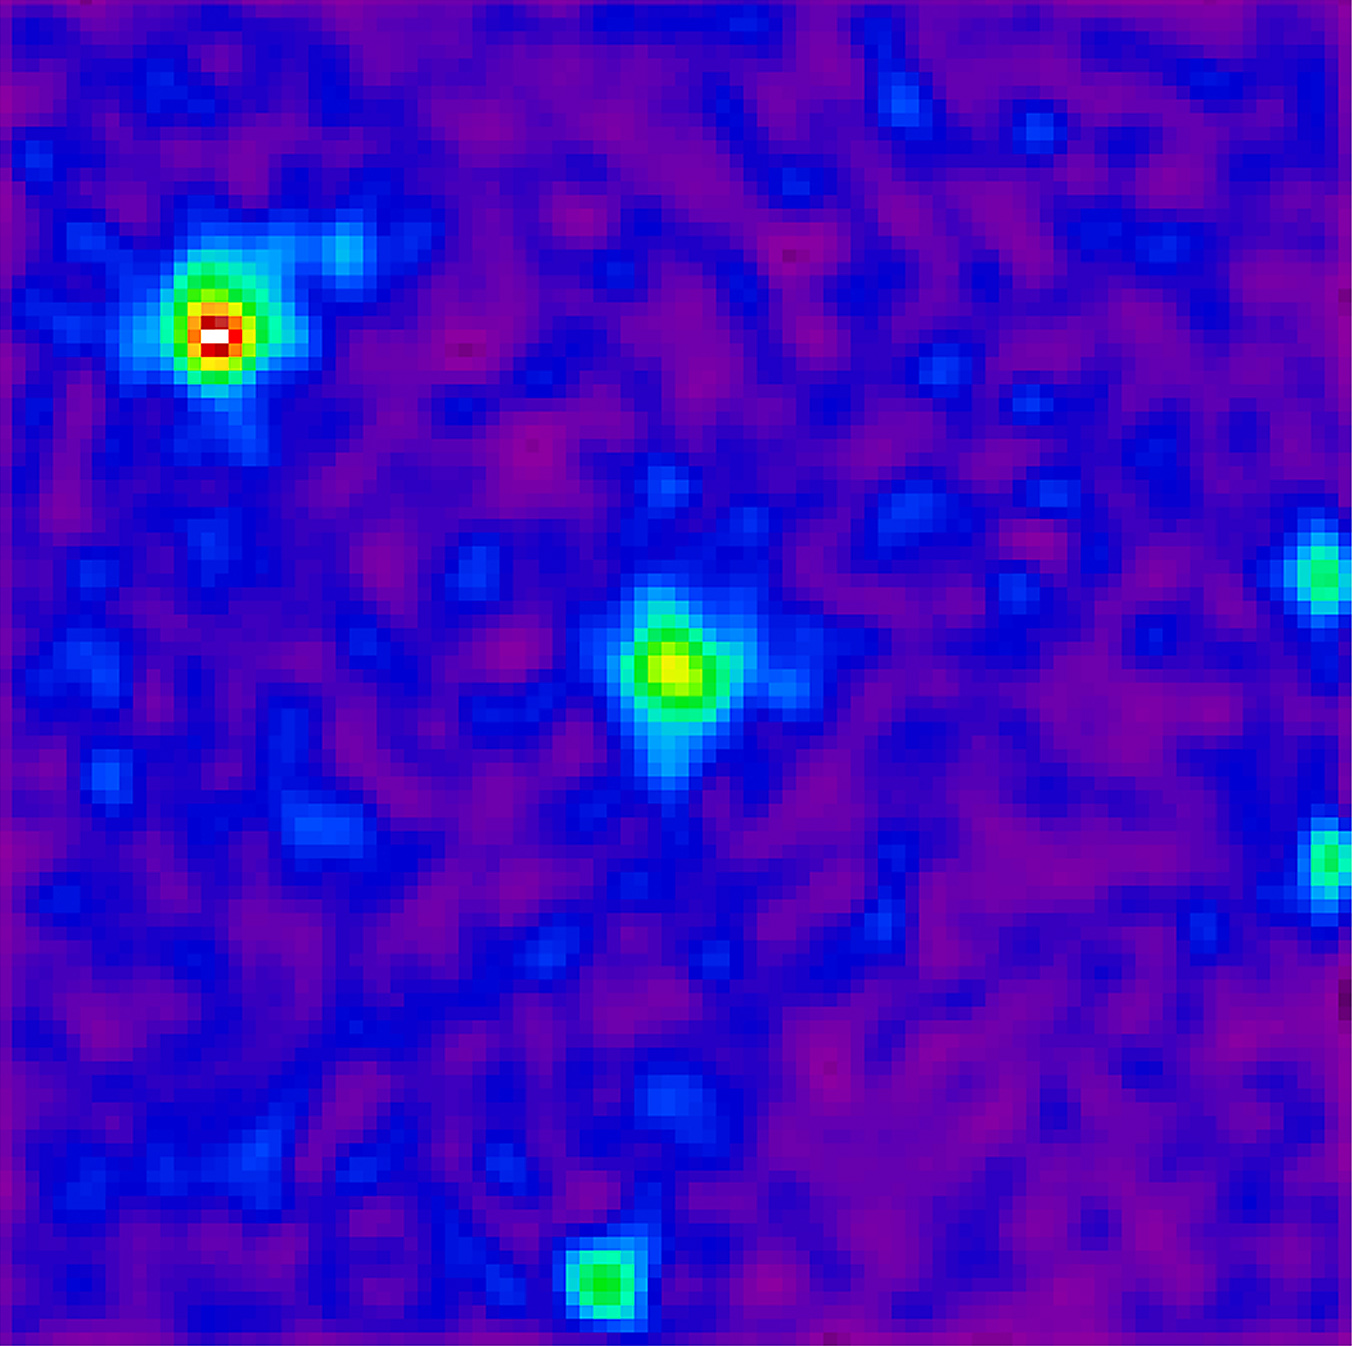 Fermi LAT view of active galaxy PMN J0948+0022